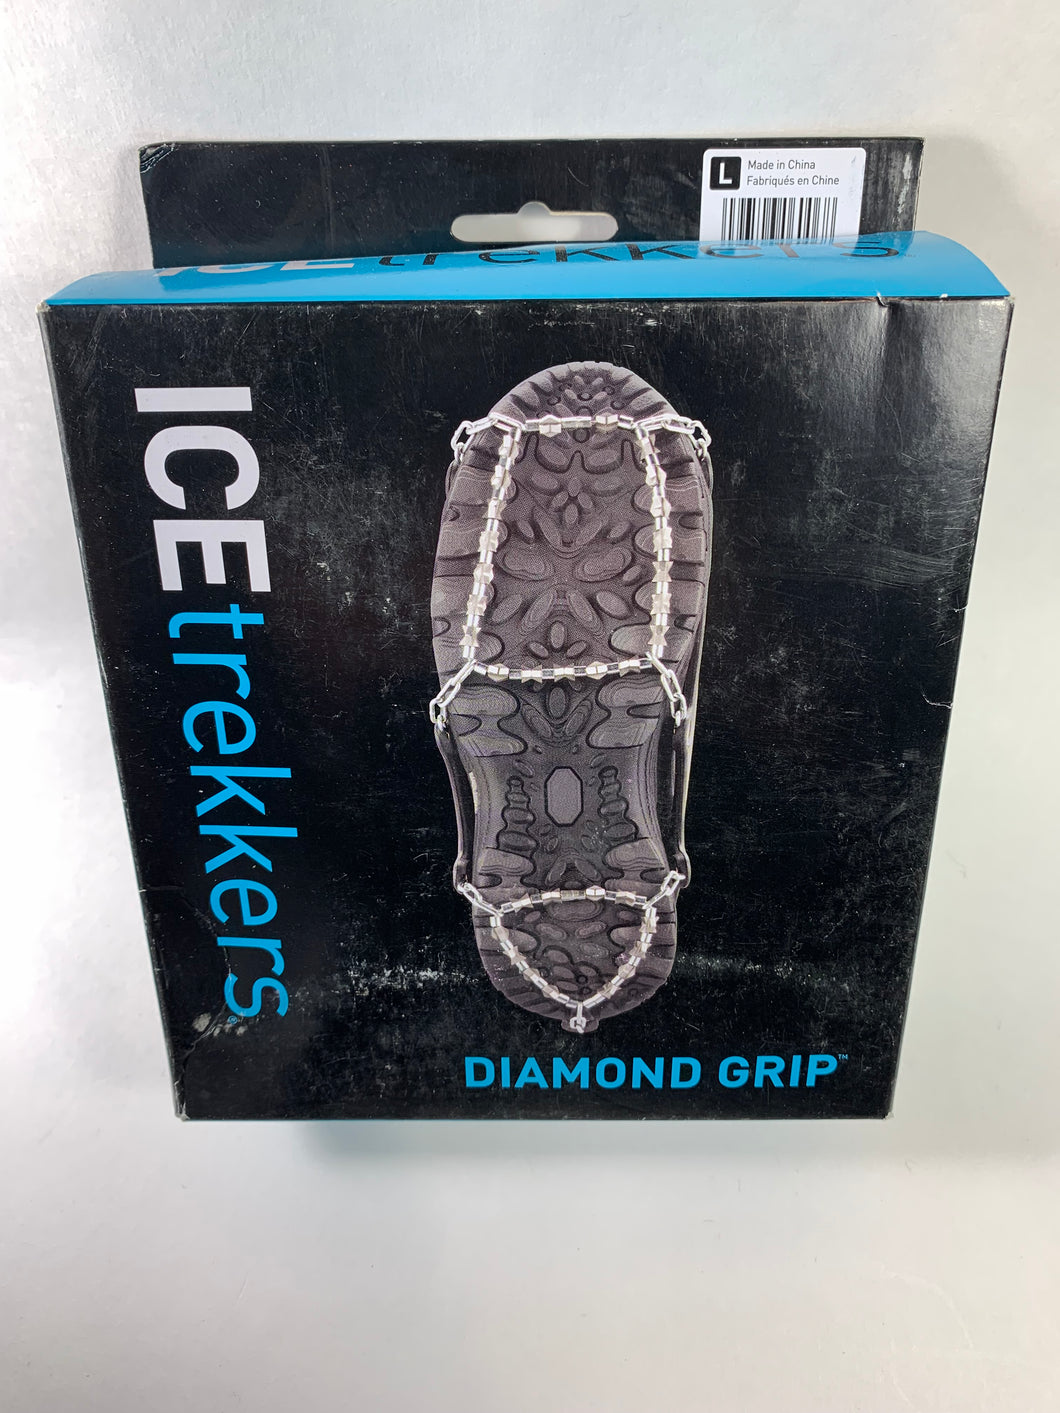 Crampon Diamond grip